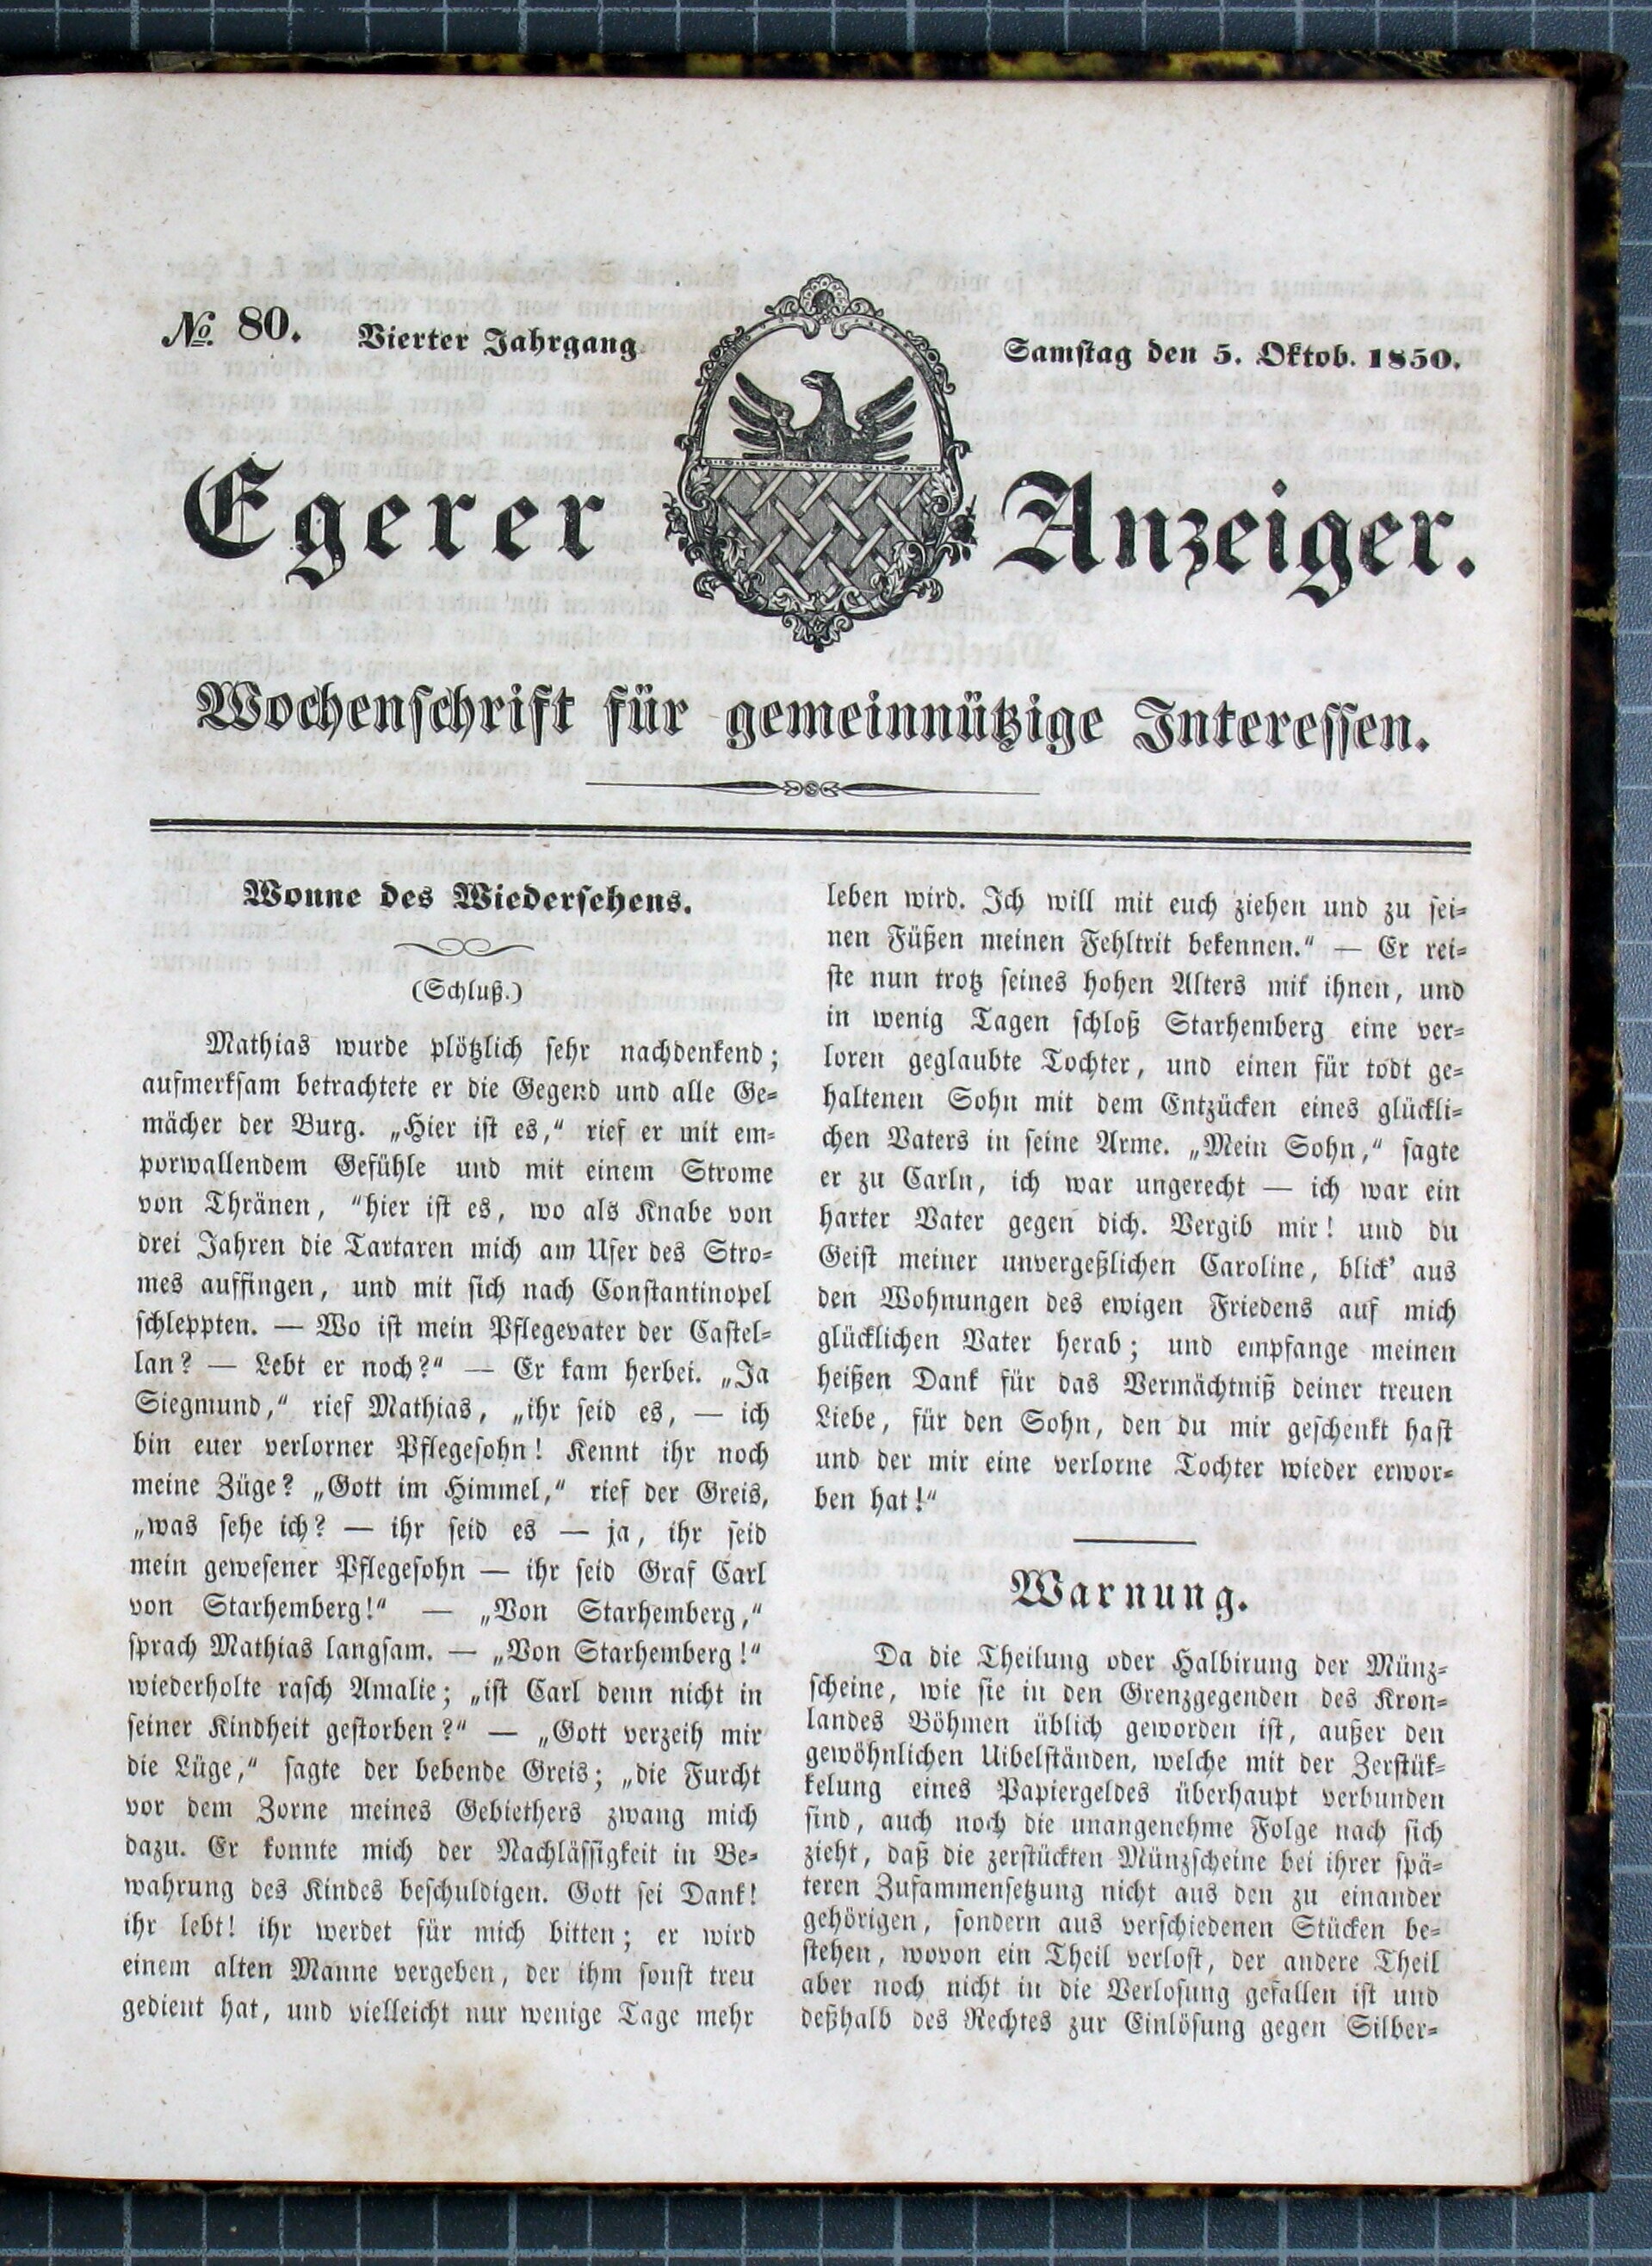 1. egerer-anzeiger-1850-10-05-n80_1205